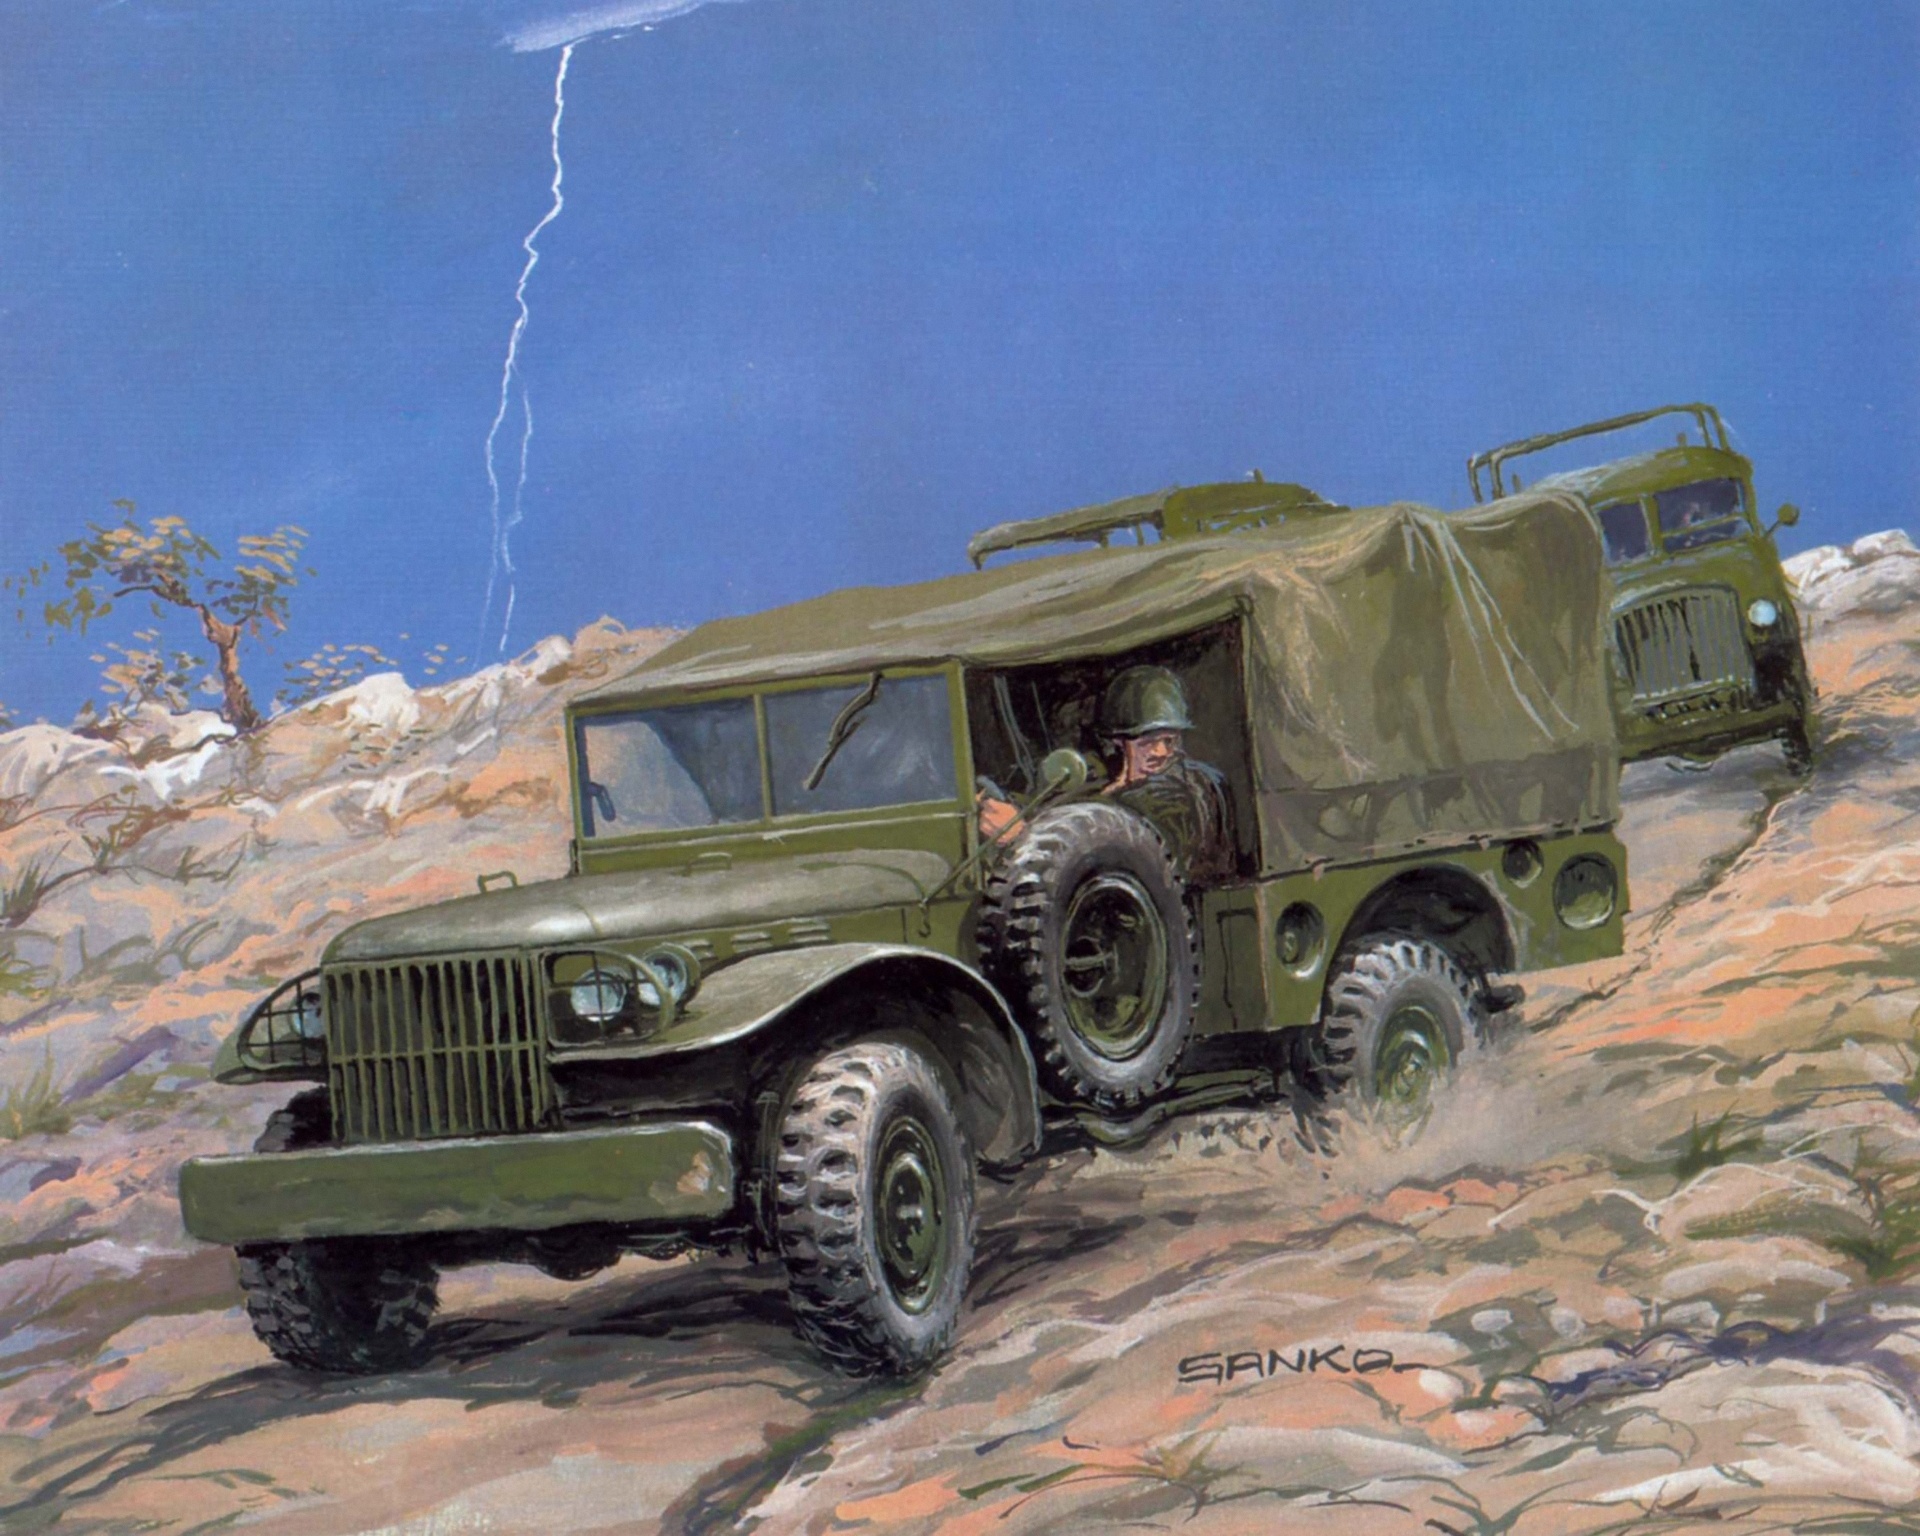 Автомобили второй войны. Dodge WC-51 звезда. Военные Грузовики СССР второй мировой войны. Dodge WC-51 1/35 звезда. Автомобили второй мировой войны.